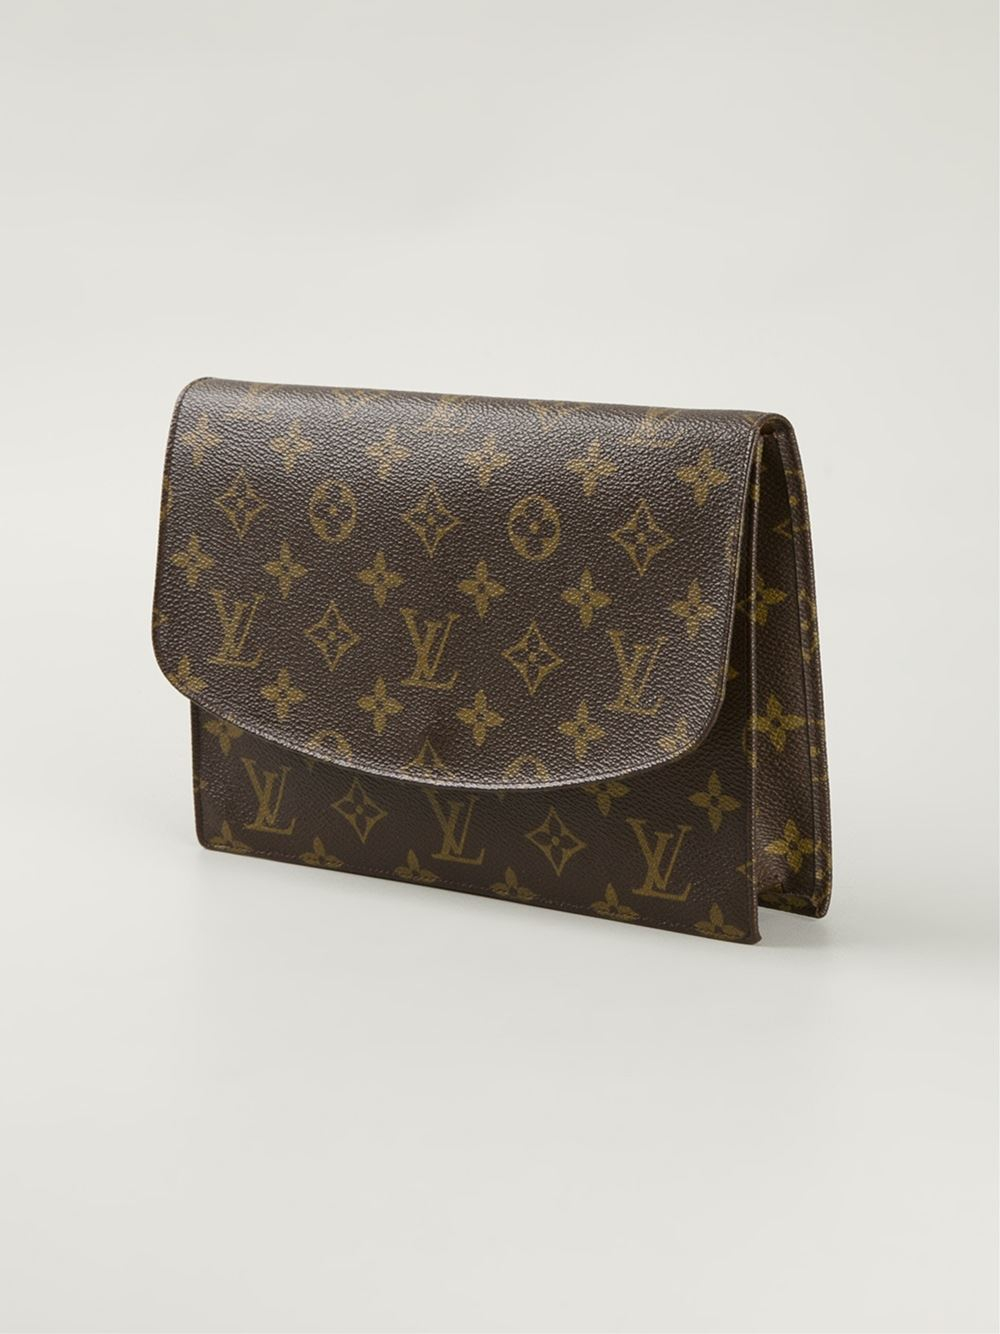 Lyst - Louis Vuitton Monogram Clutch in Brown